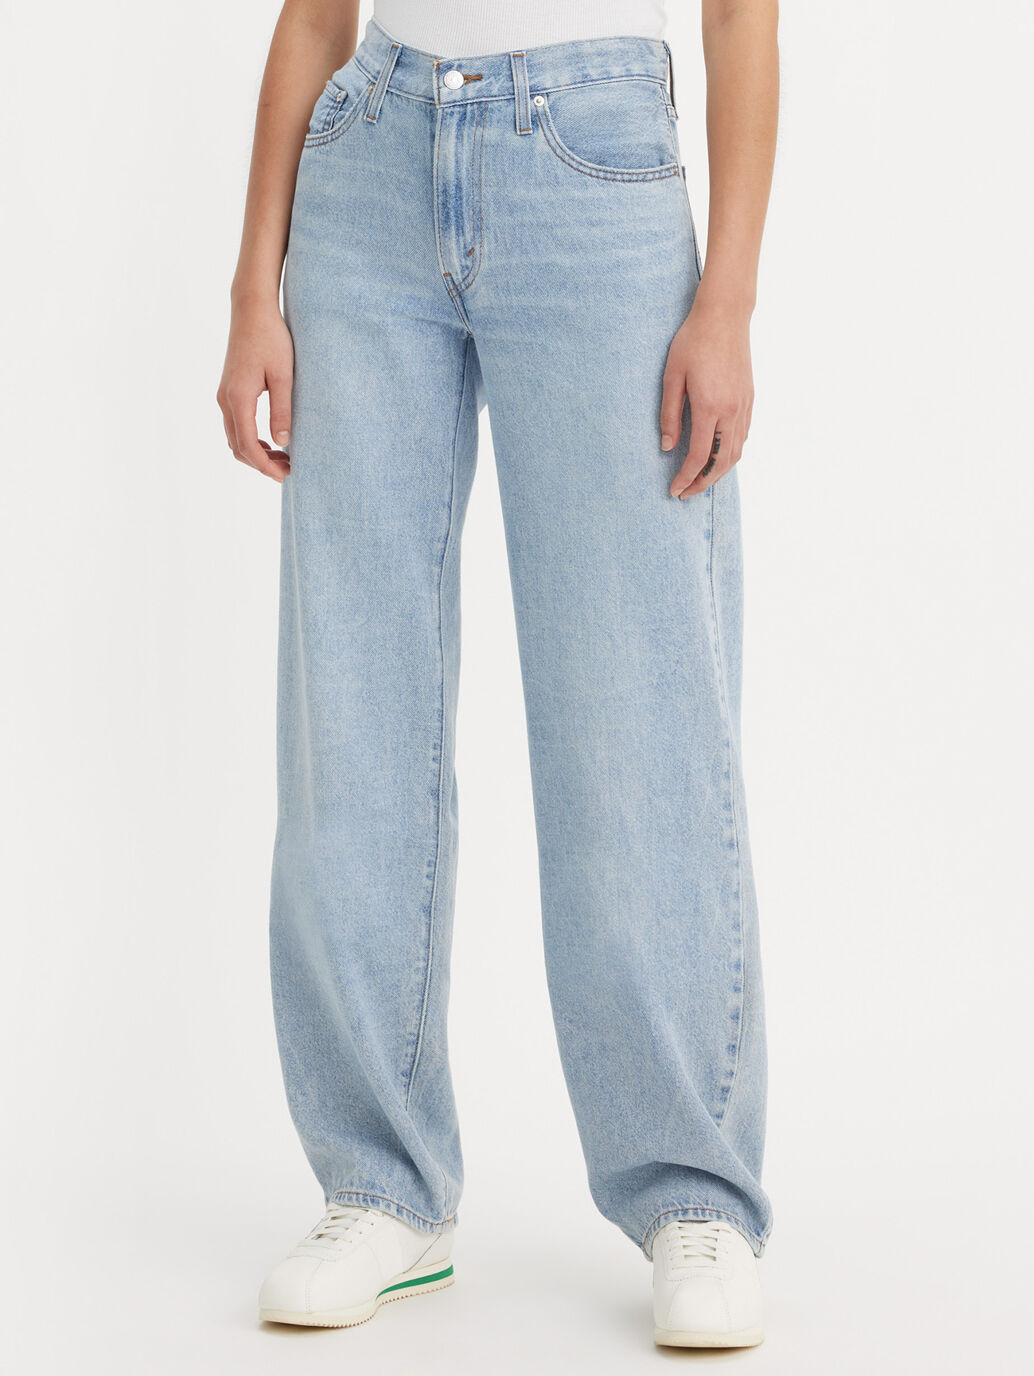 Baggy Dad Women's Jeans (plus Size) - Light Wash